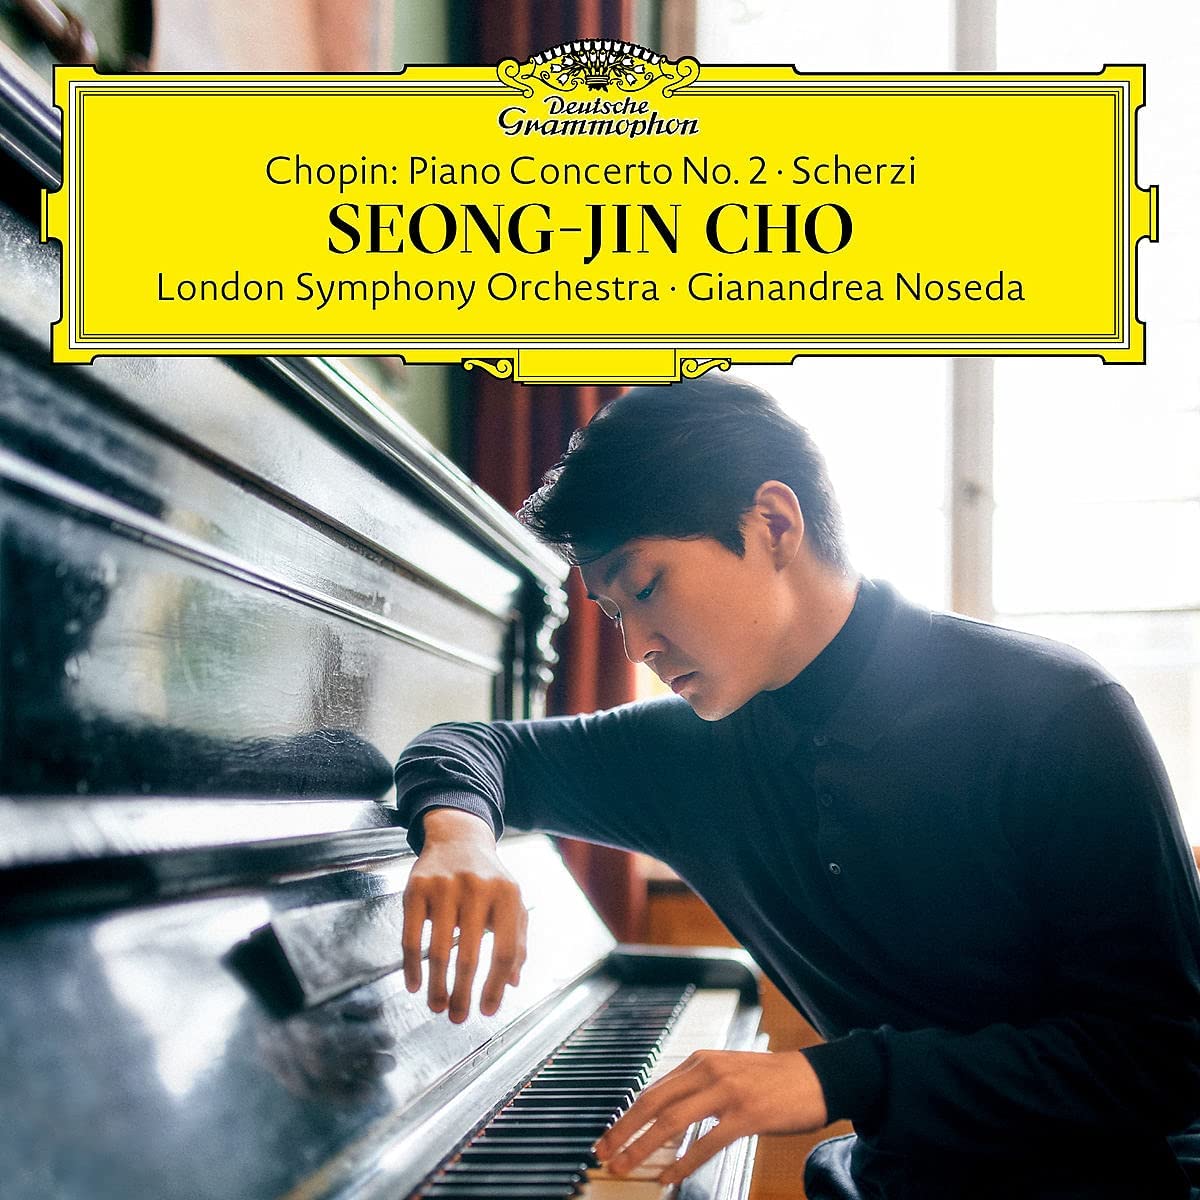 Chopin: Piano Concerto No. 2; Scherzi | Frederic Chopin, Seong-Jin Cho, London Symphony Orchestra carturesti.ro poza noua